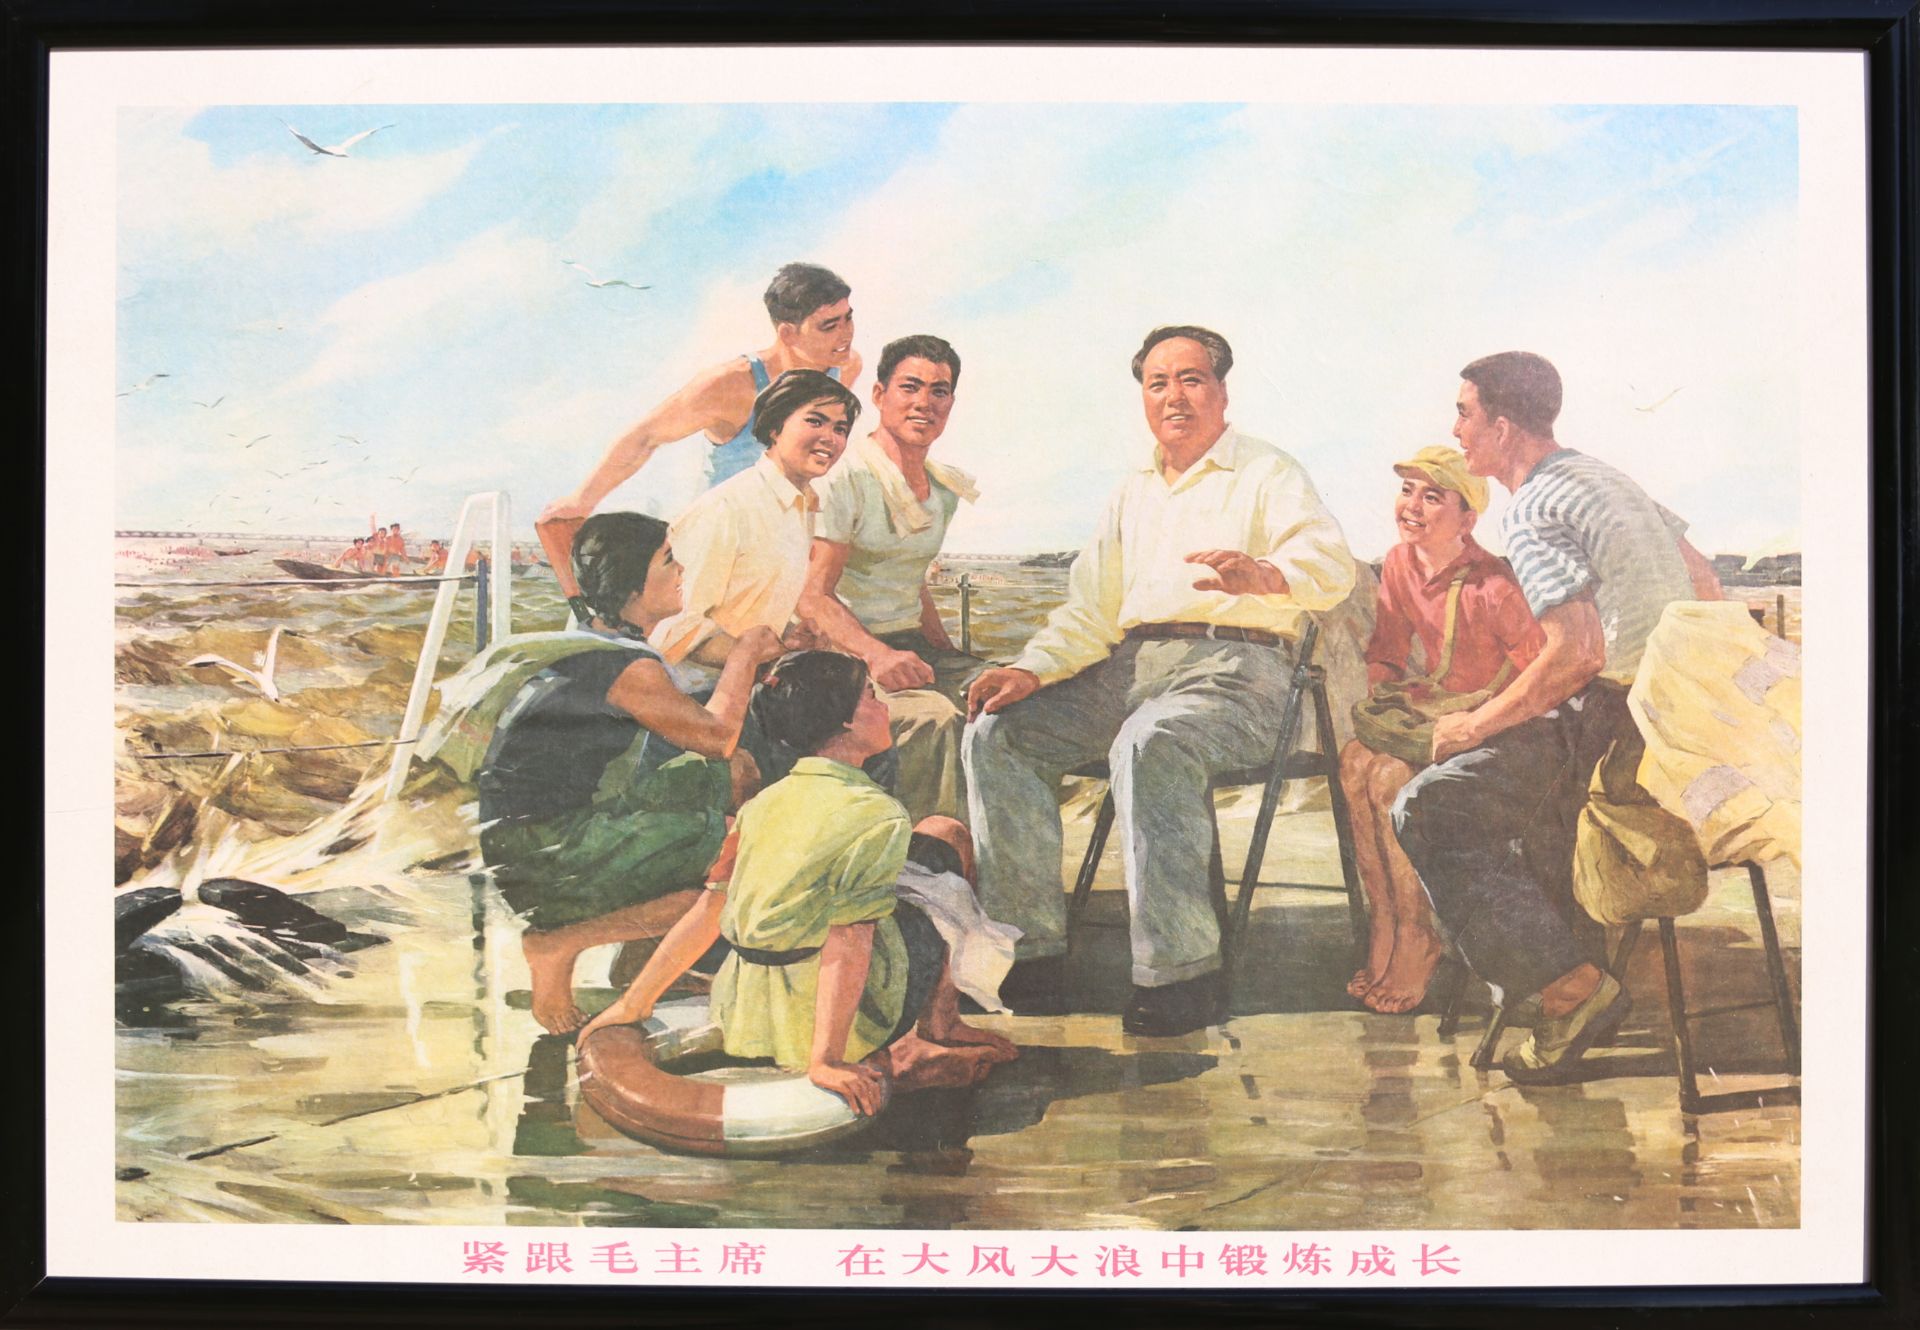 17 Affiches de propagande de la révolution culturelle chinoise Encadrée 75cm x 52cm - Bild 3 aus 17